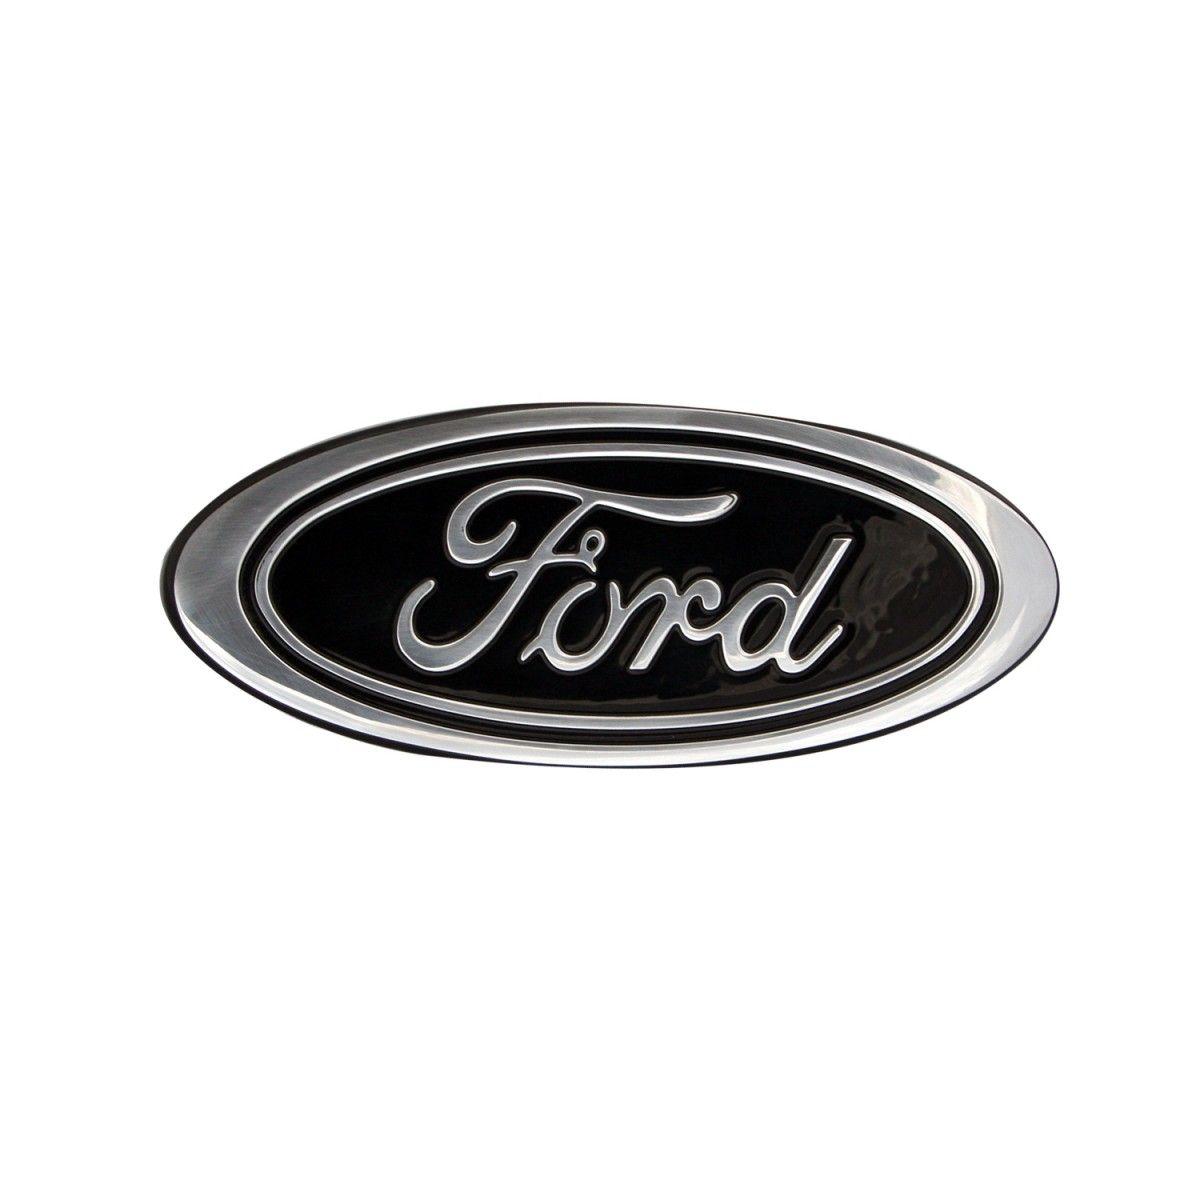 2015 Ford Logo - Ford F 150 Billet Grille & Tailgate Emblem 9.5 Inch Black Oval